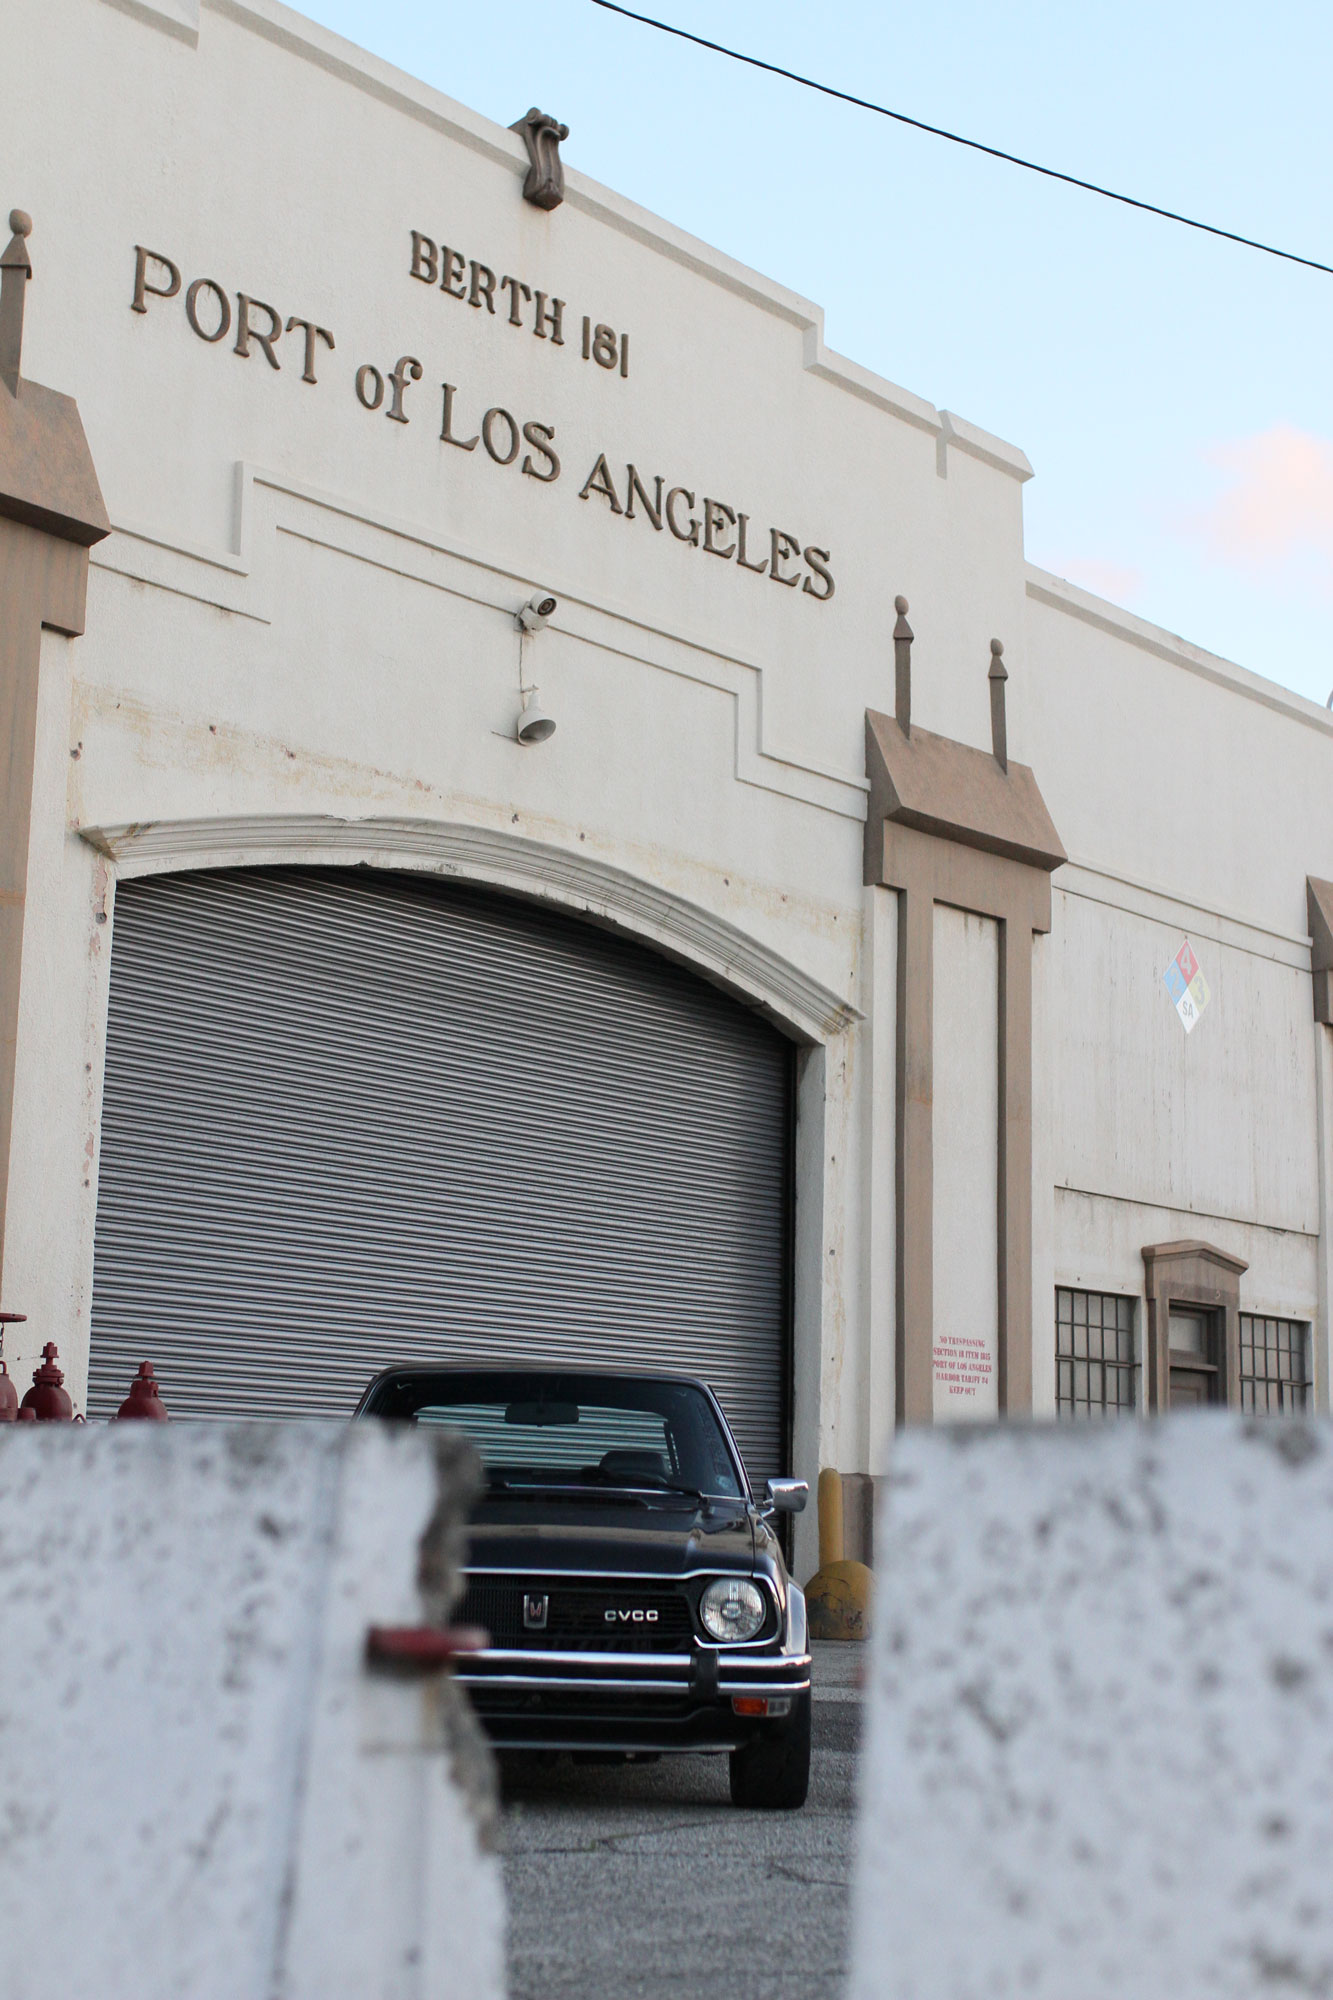 Vid Port of Los Angeles står Honda civic Cvcc från 1978